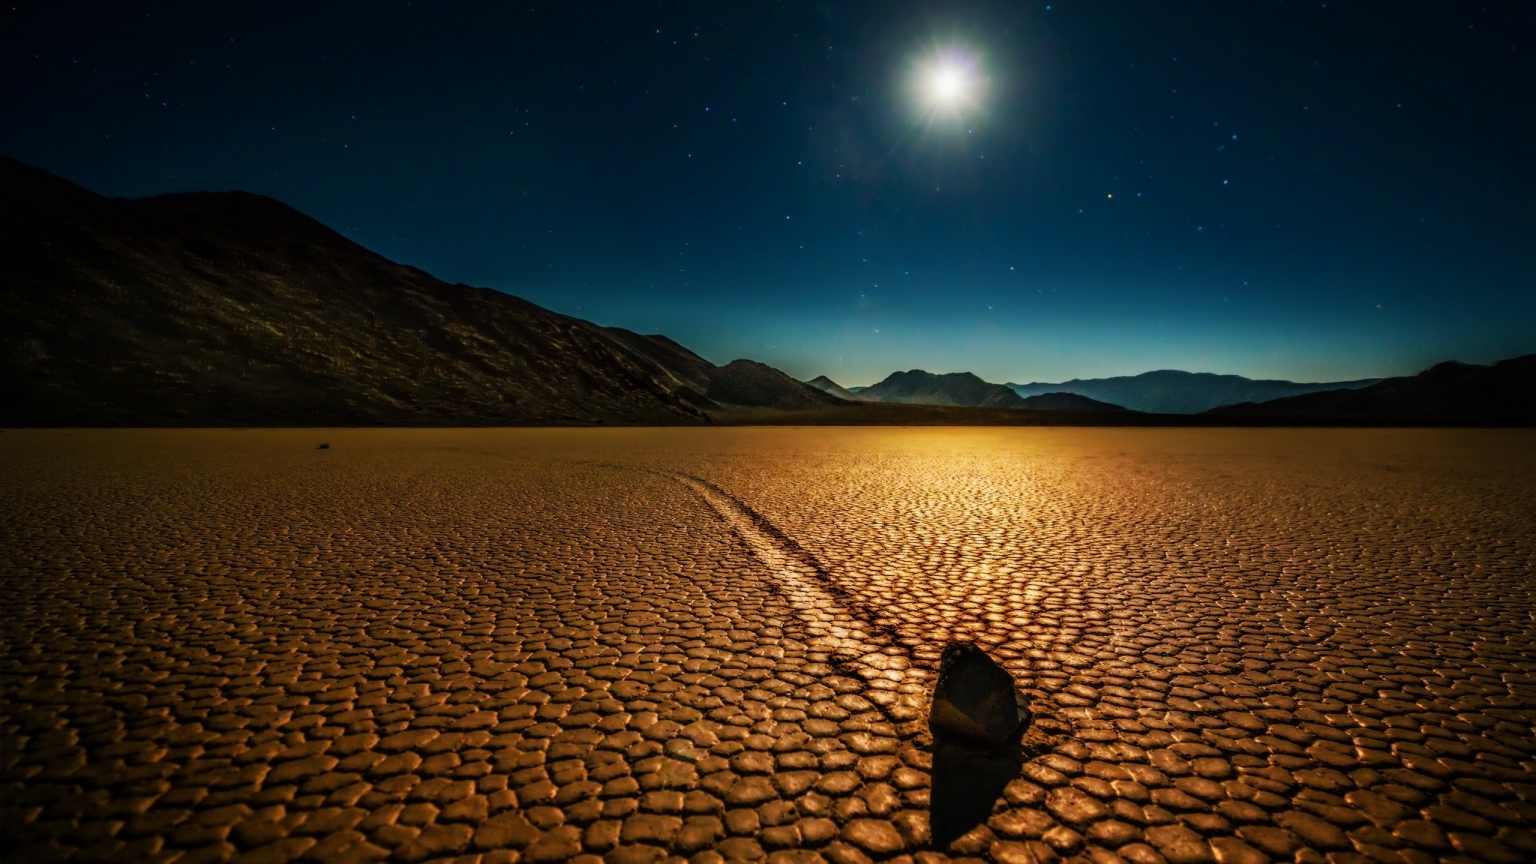 Desert Night Landscape for 1536 x 864 HDTV resolution